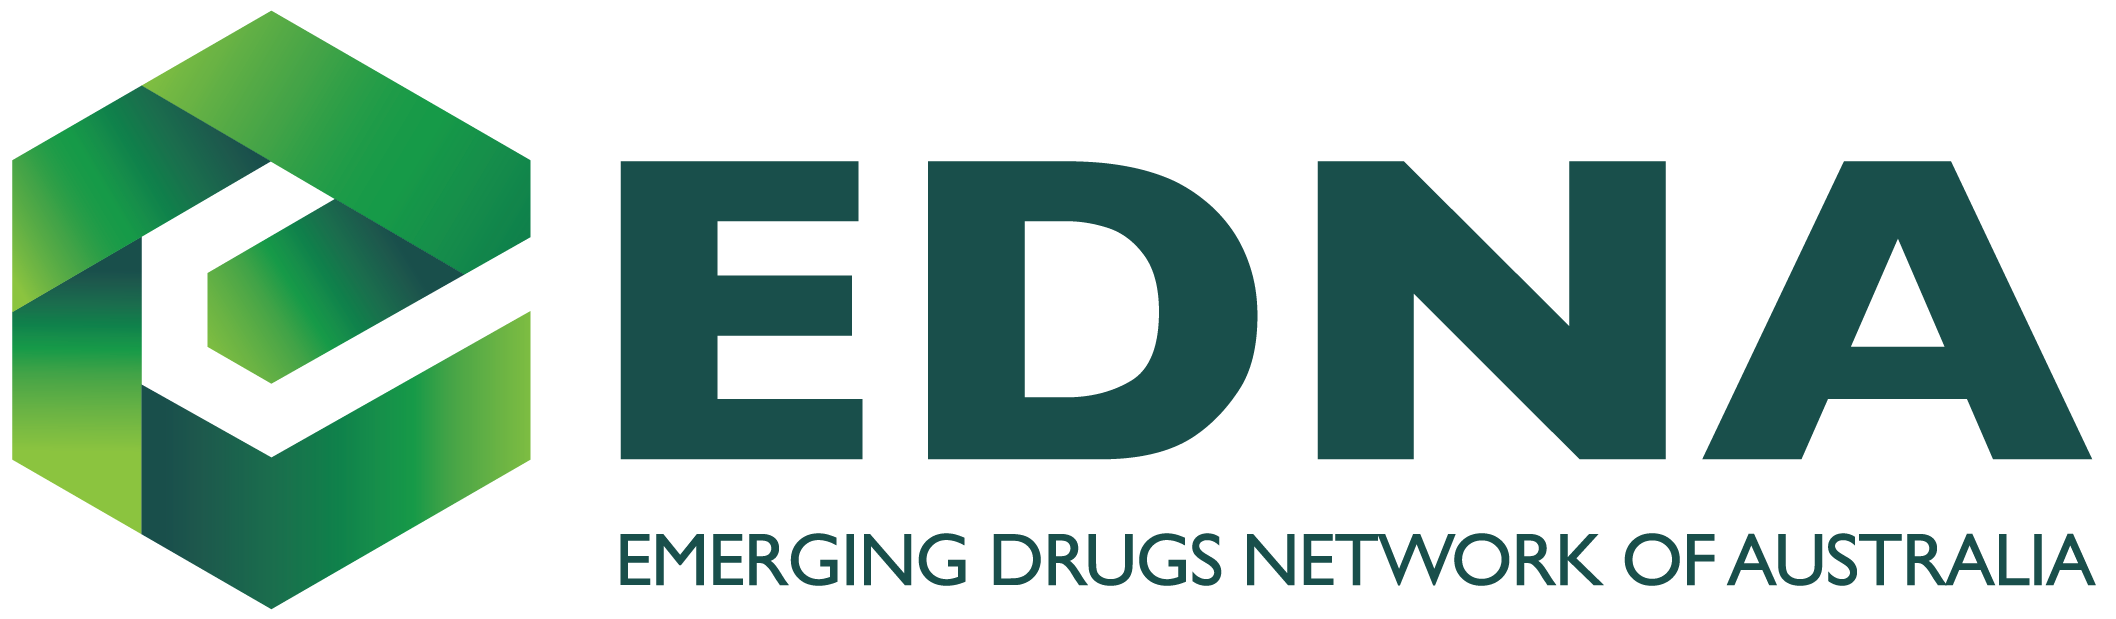 EDNA logo